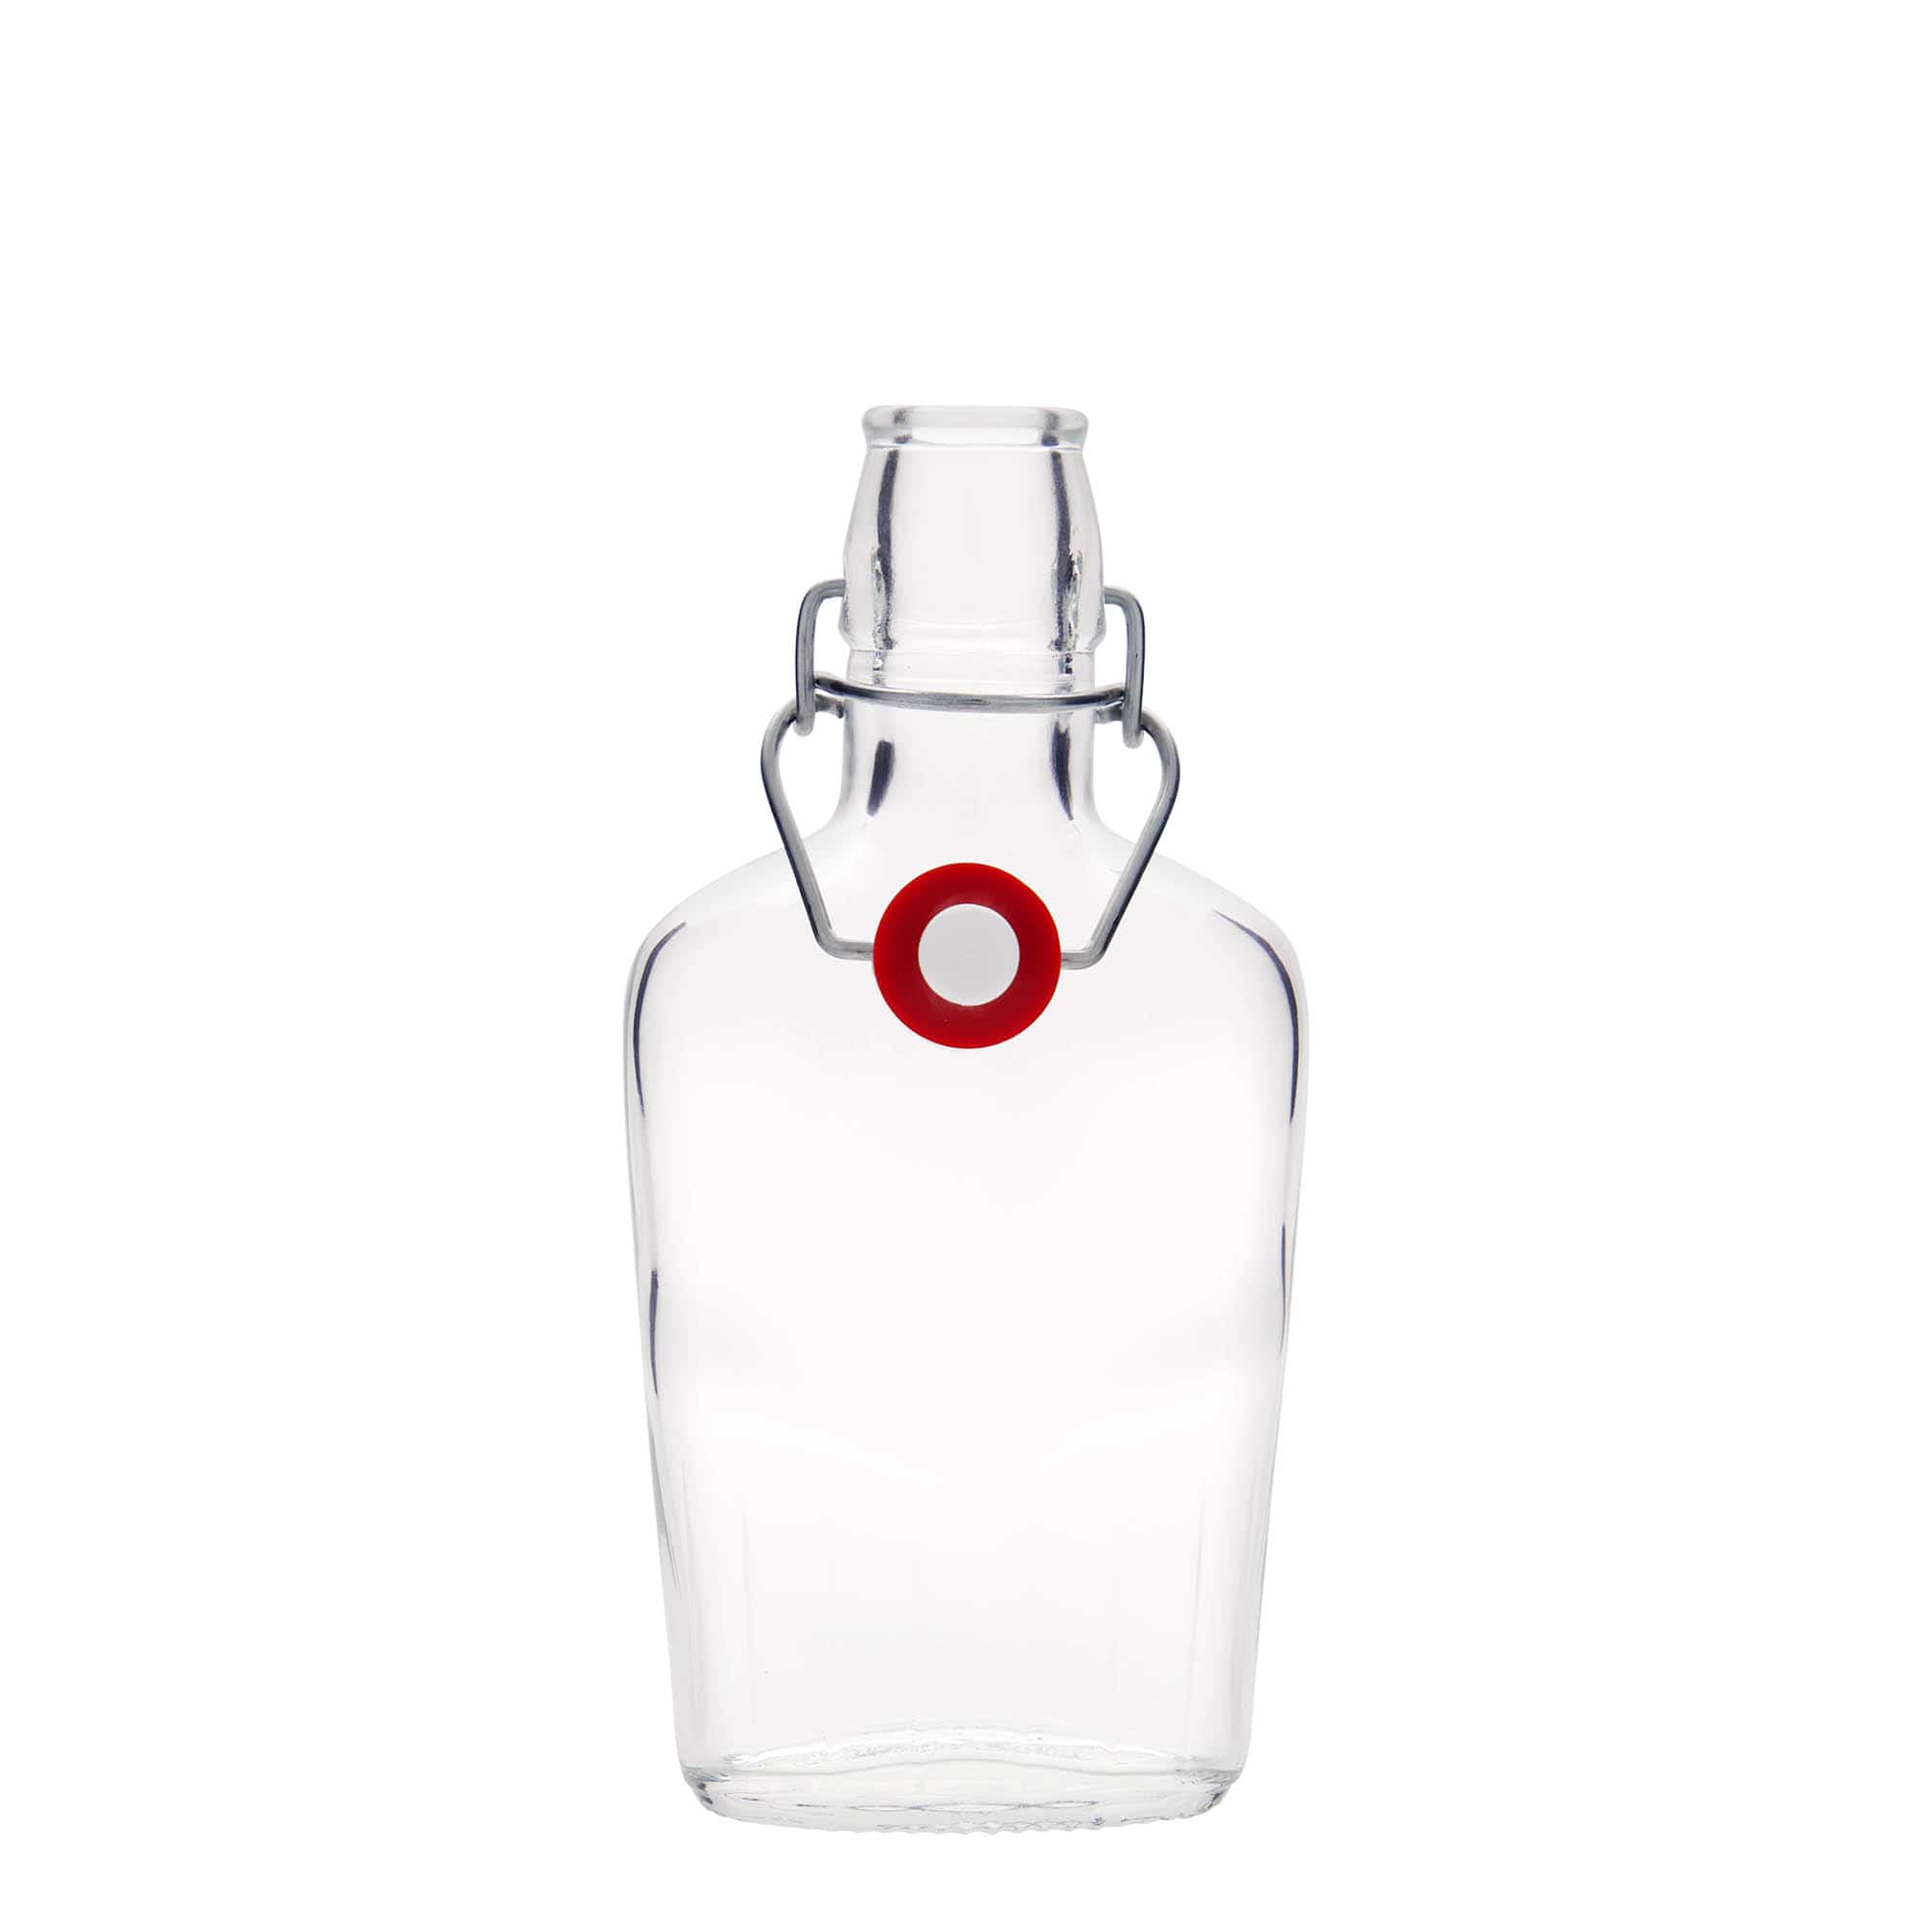 Botella de vidrio 'Fiaschetta' de 250 ml, ovalada, boca: tapón mecánico